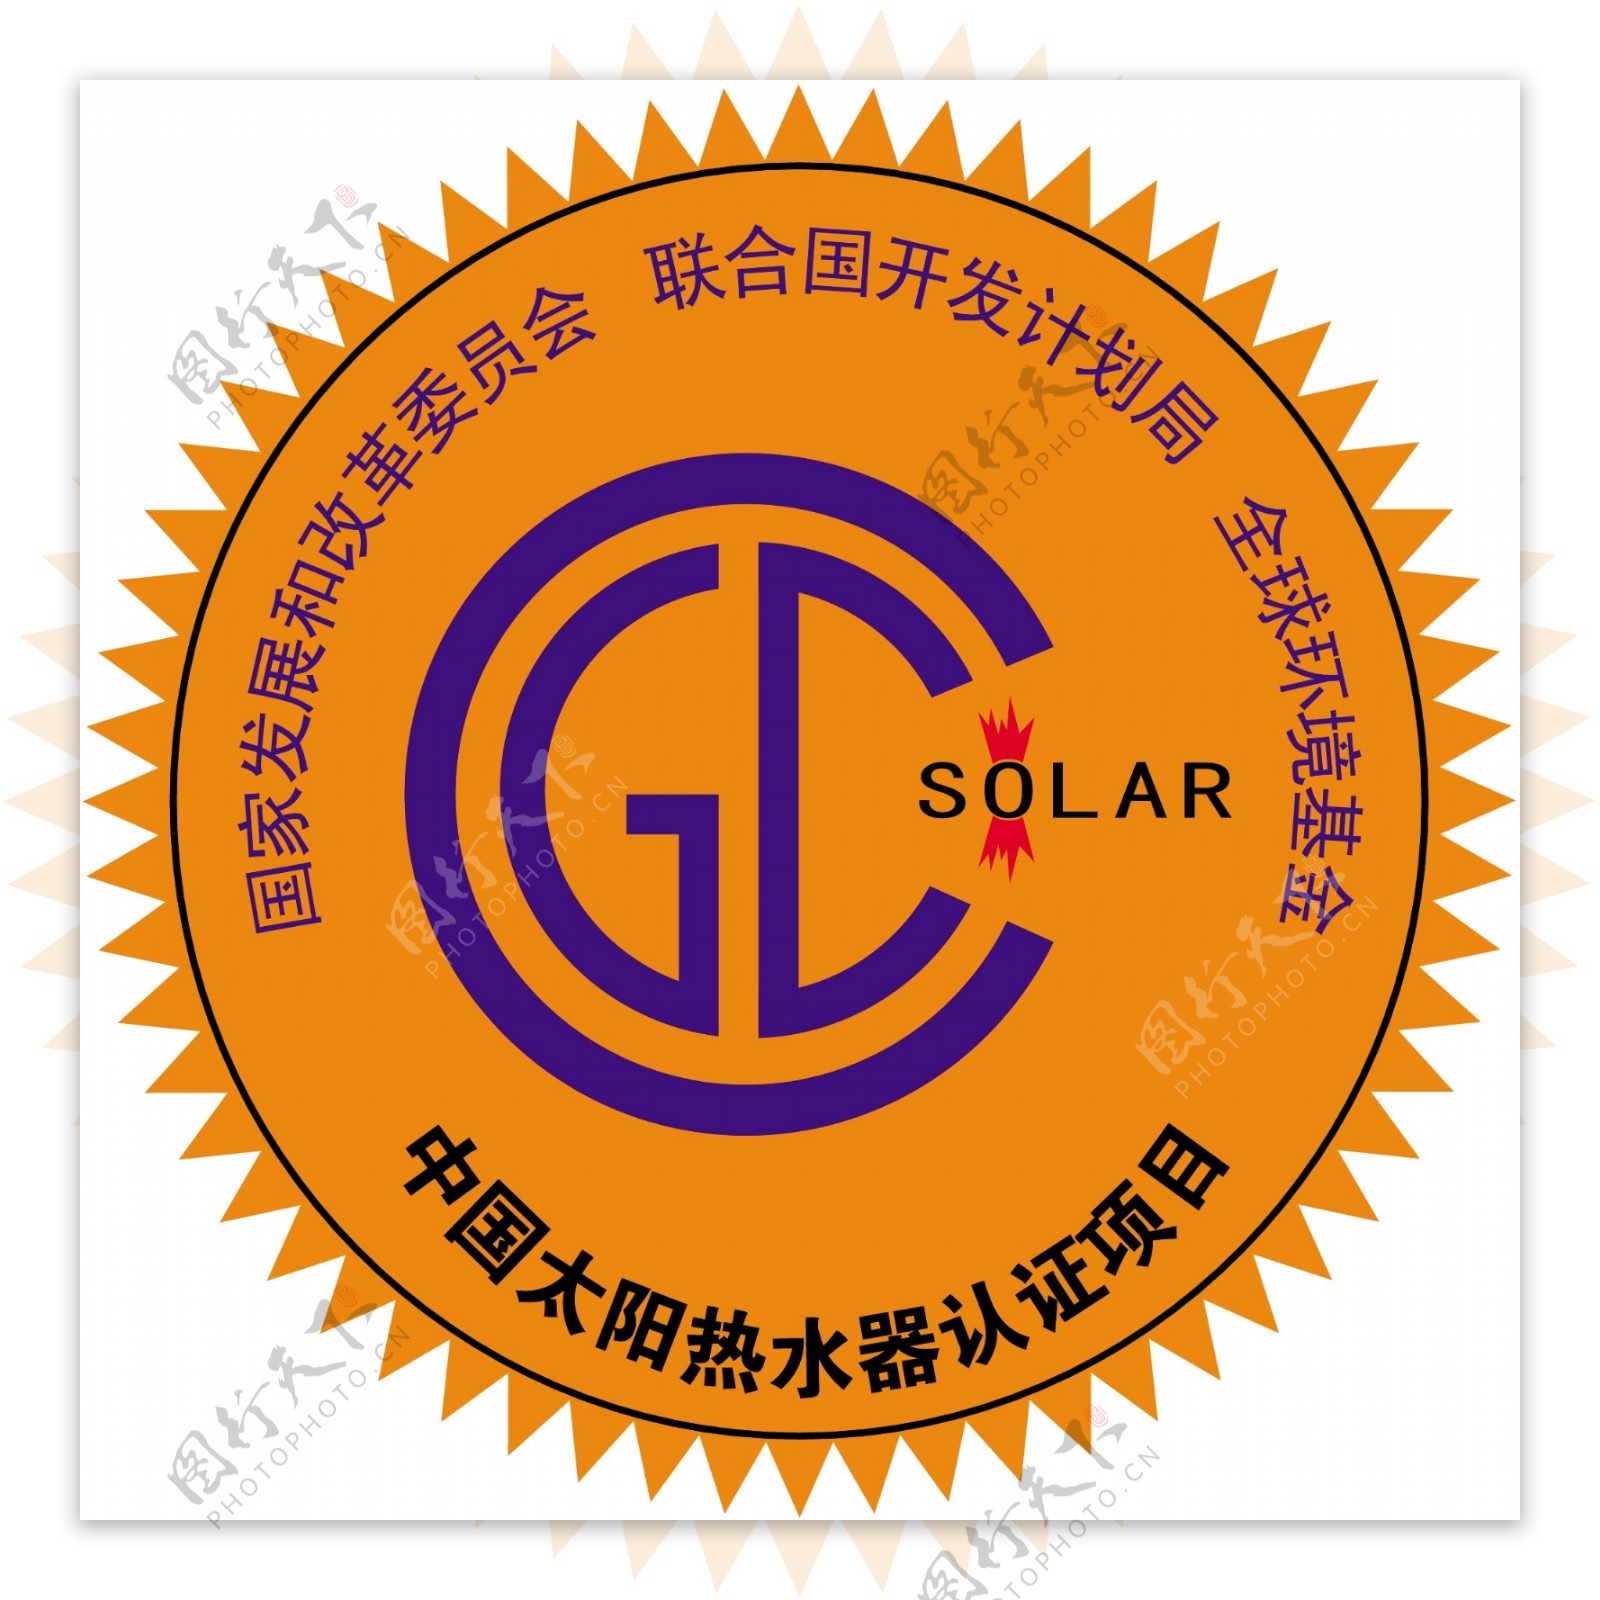 太阳能热水器金太阳认证标志图片